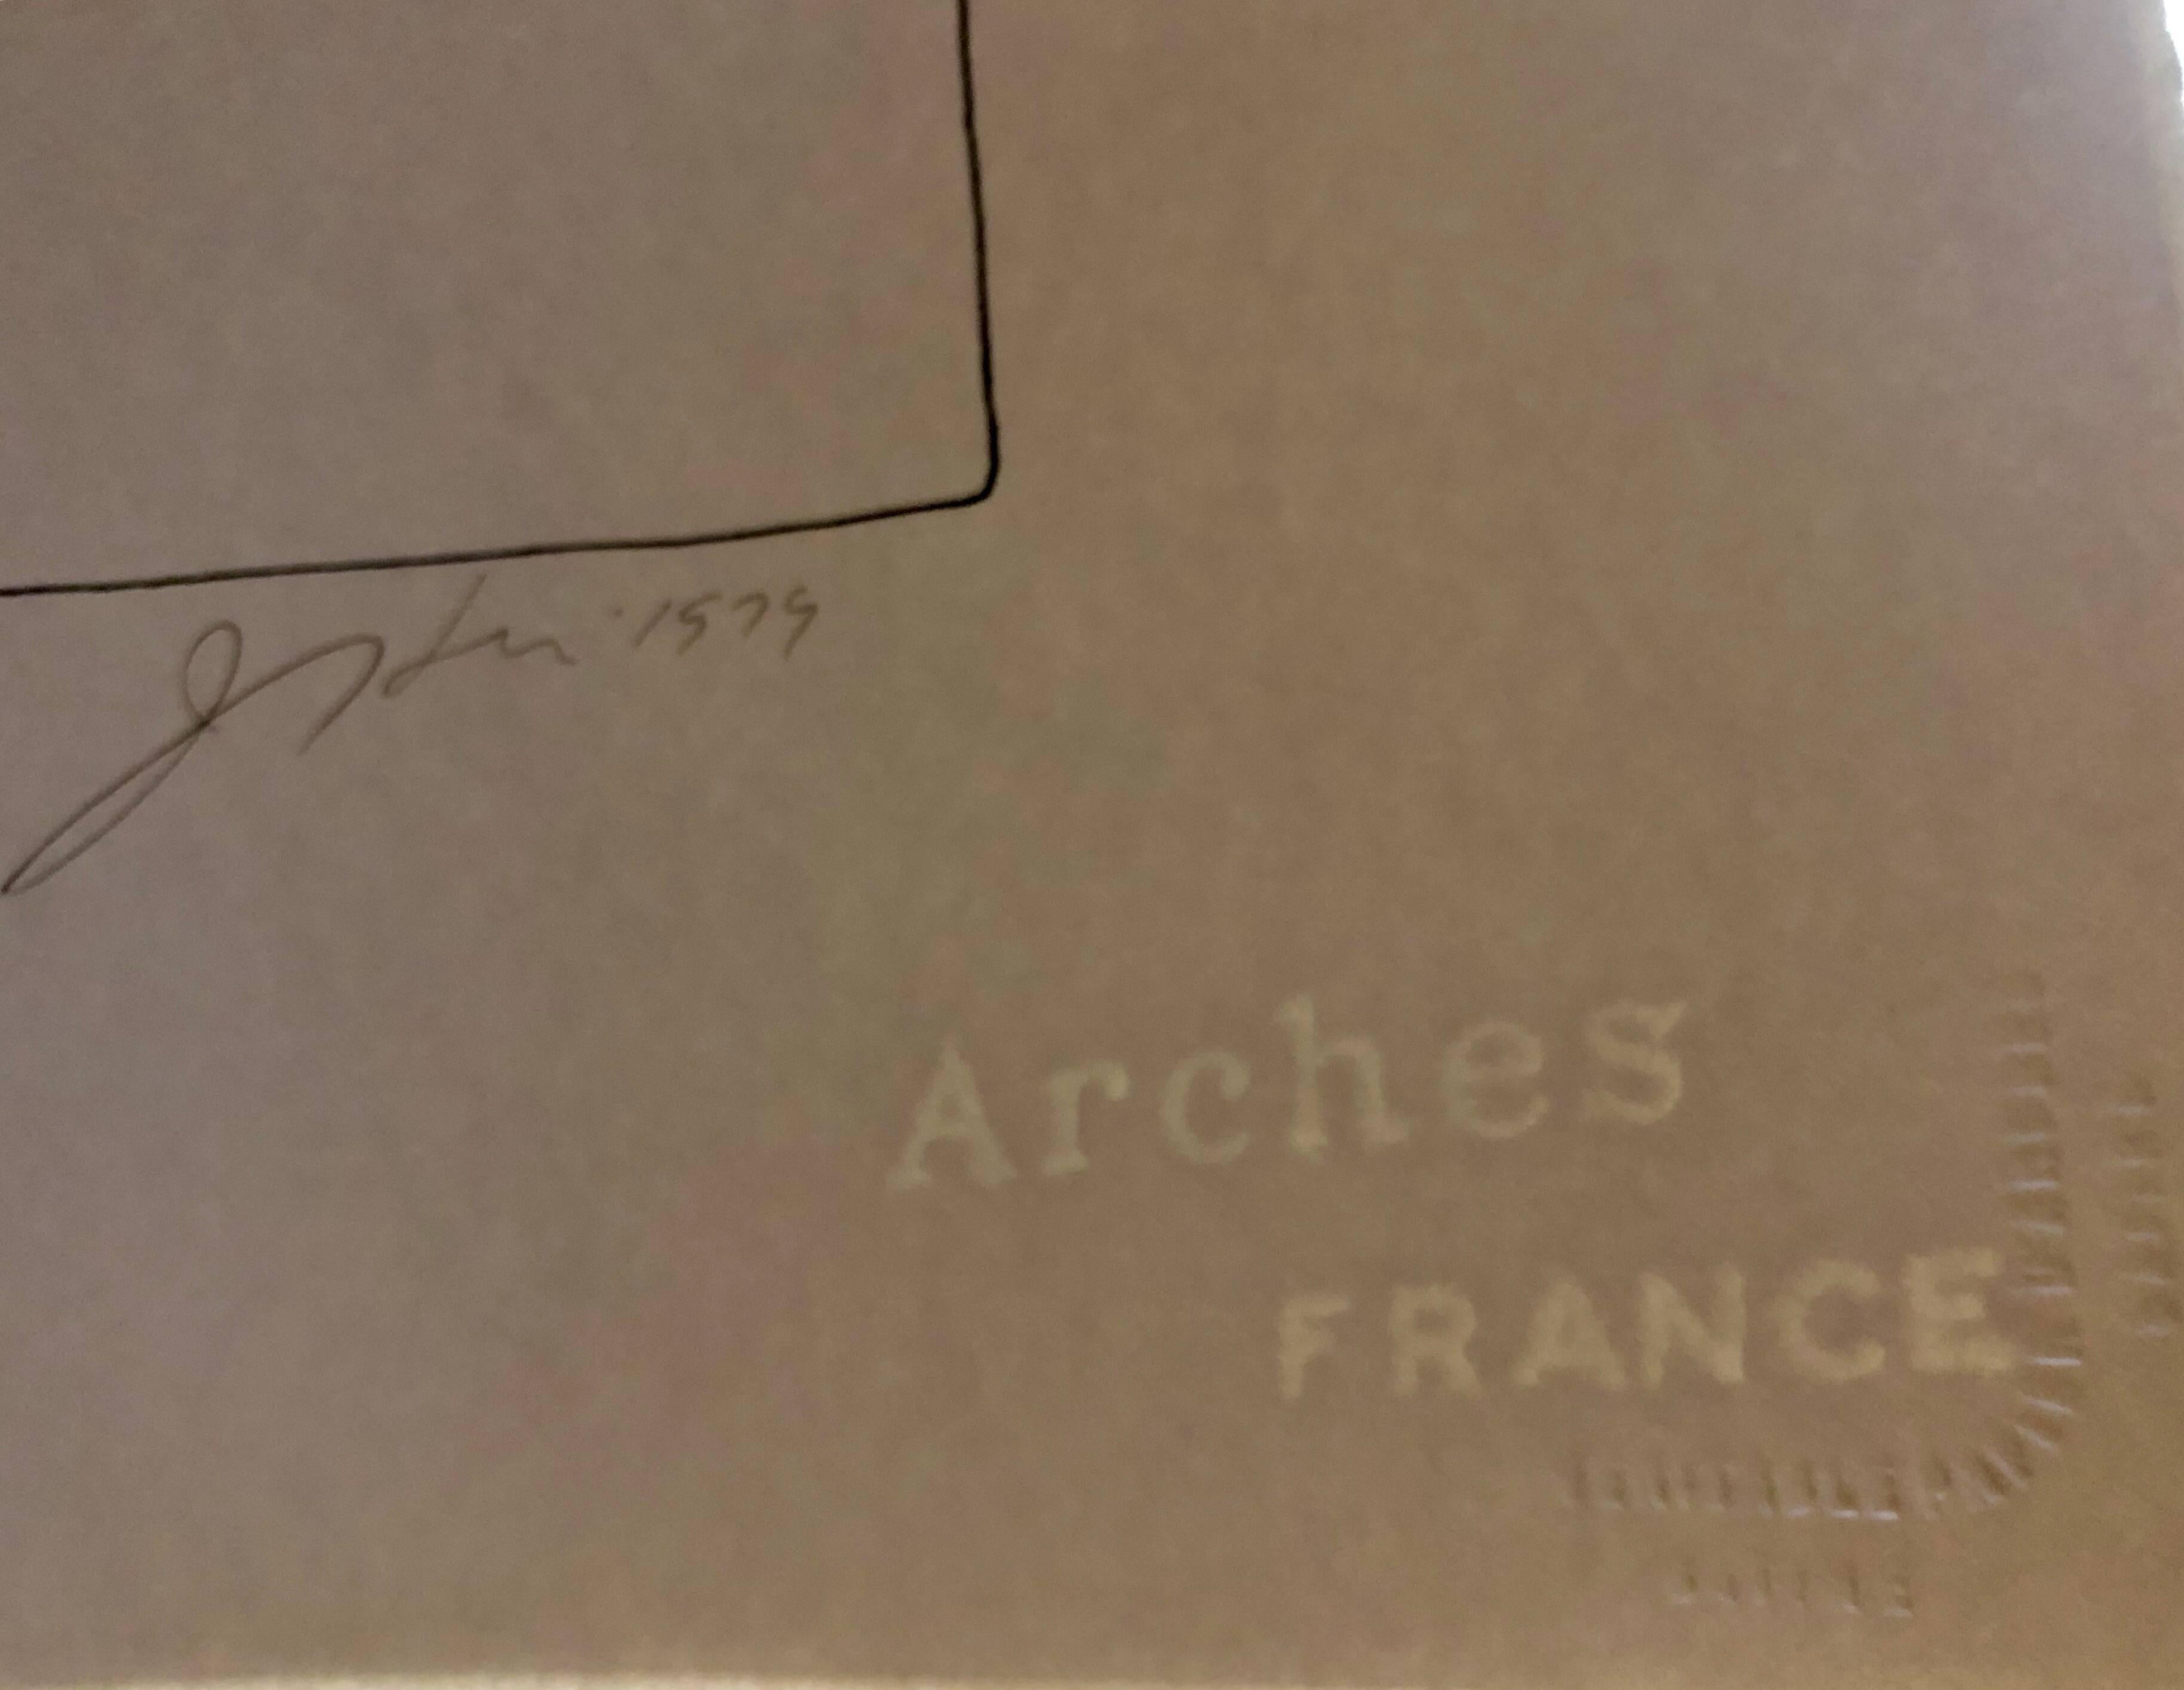 Sur papier français d'Arches filigrané avec cachet de l'éditeur en relief. Signé à la main au crayon, daté et numéroté. Le tirage est de 175 exemplaires.
il existe trois états de la même image, chacun avec un niveau de détail et de couleur